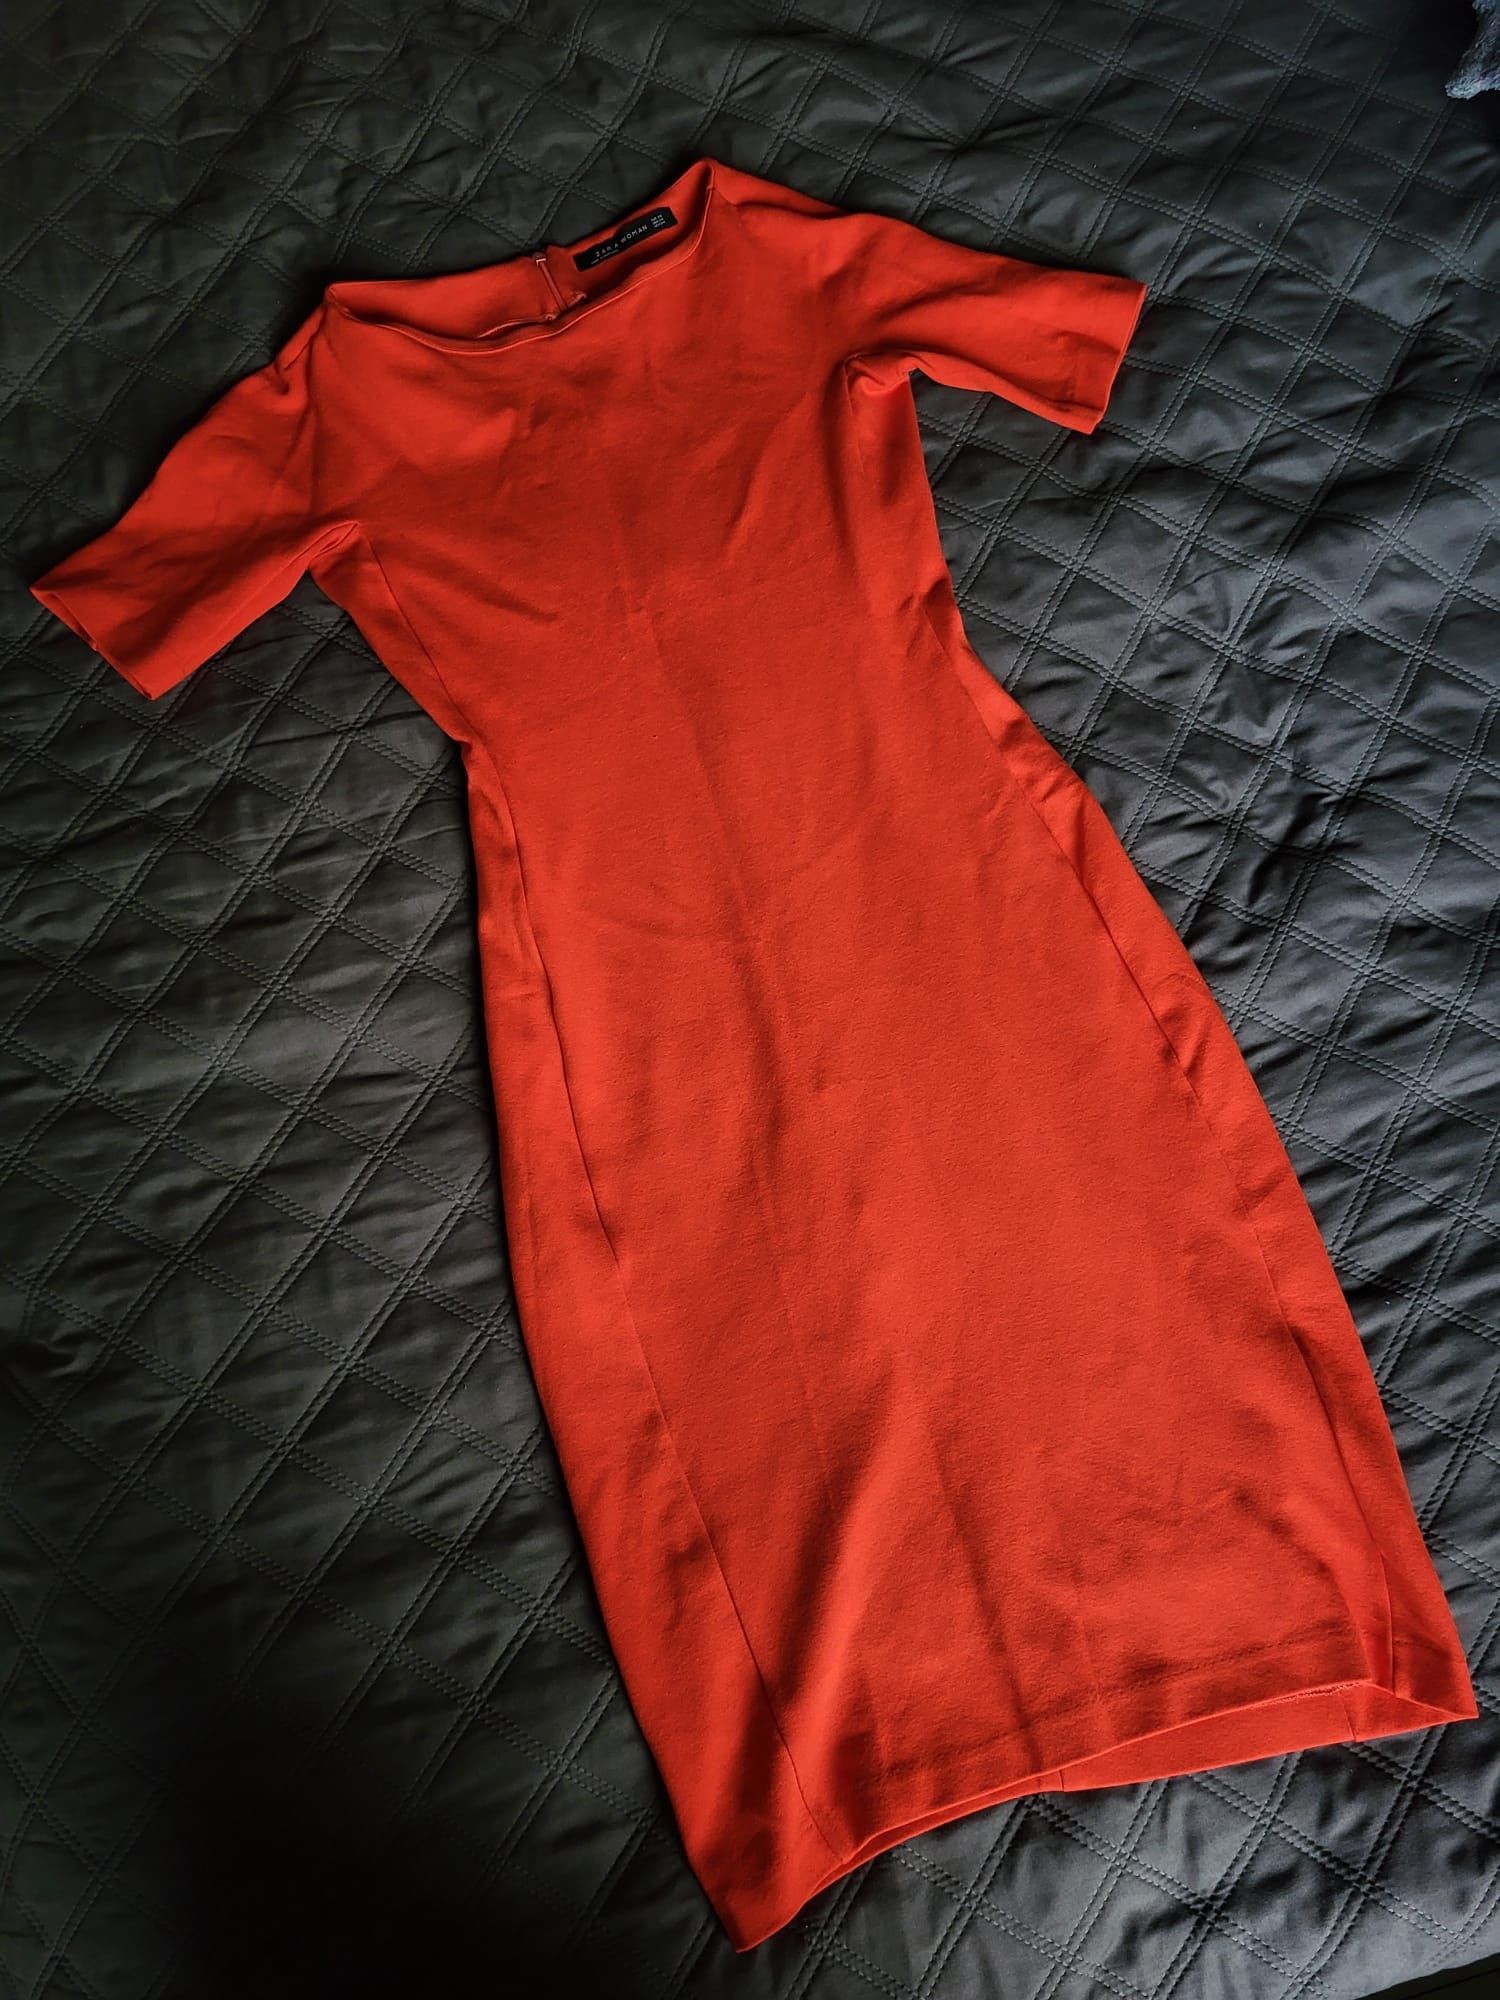 Sukienka czerwona ZARA XS 34